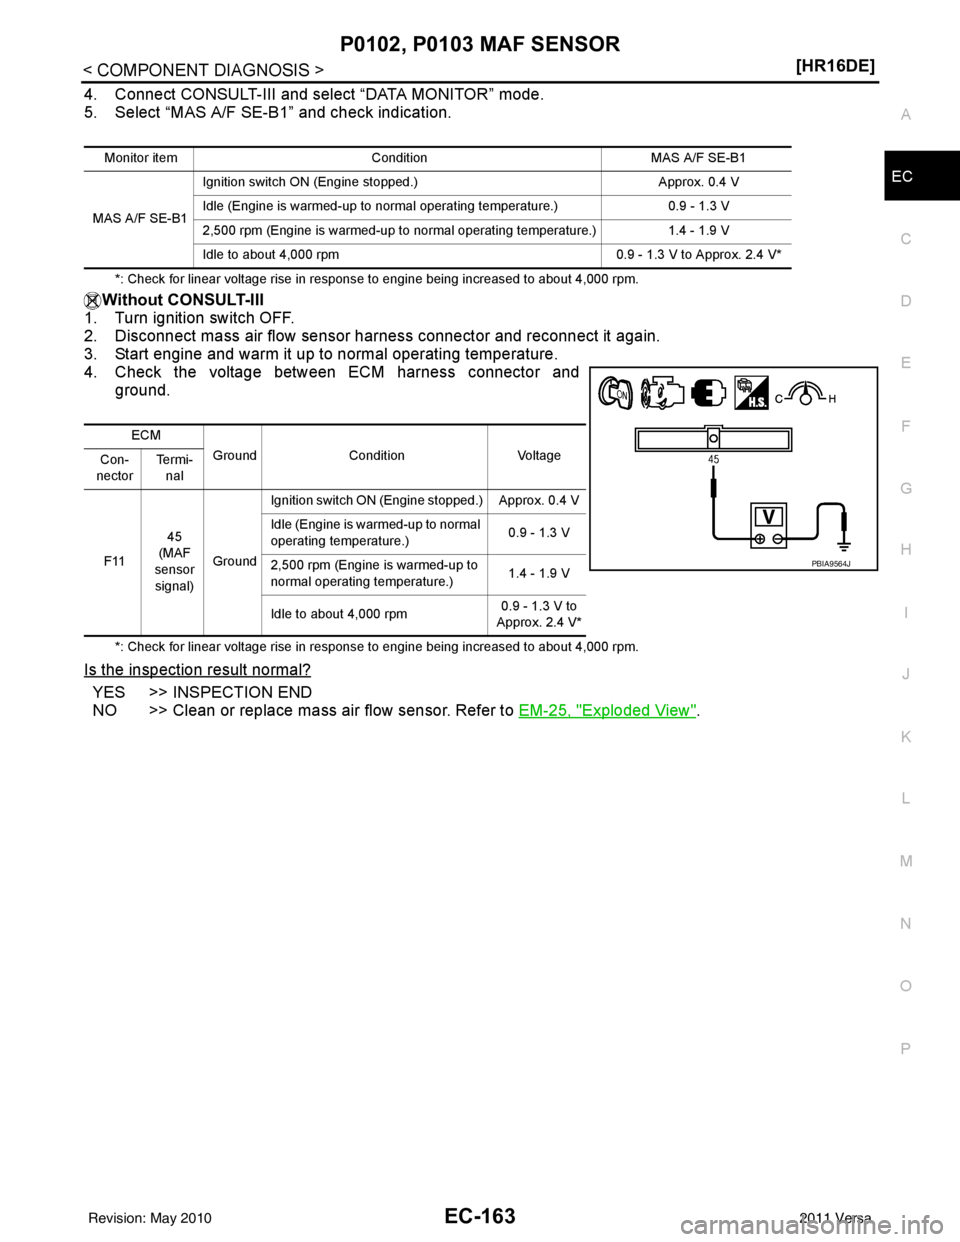 NISSAN LATIO 2011  Service Repair Manual P0102, P0103 MAF SENSOREC-163
< COMPONENT DIAGNOSIS > [HR16DE]
C
D
E
F
G H
I
J
K L
M A
EC
NP
O
4. Connect CONSULT-III and select “DATA MONITOR” mode.
5. Select “MAS A/F SE-B1” and check indica